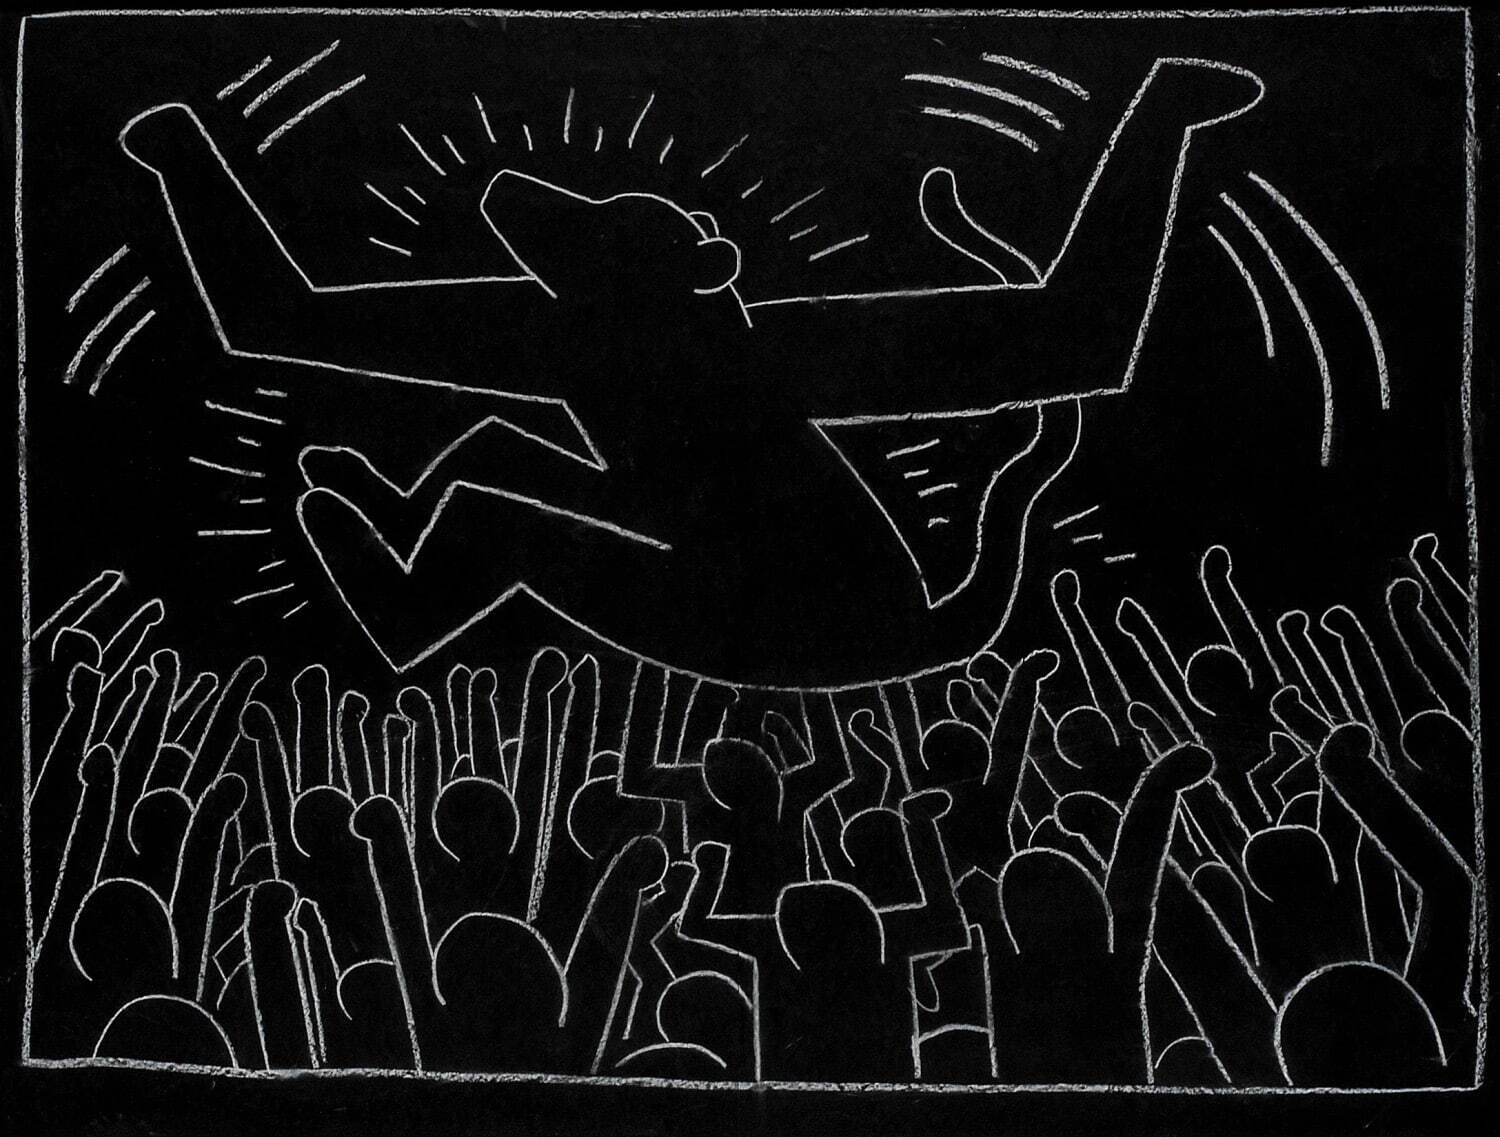 キース・へリング 《無題(サブウェイ・ドローイング)》 1981-83年 中村キース・ヘリング美術館蔵
Keith Haring Artwork ©Keith Haring Foundation